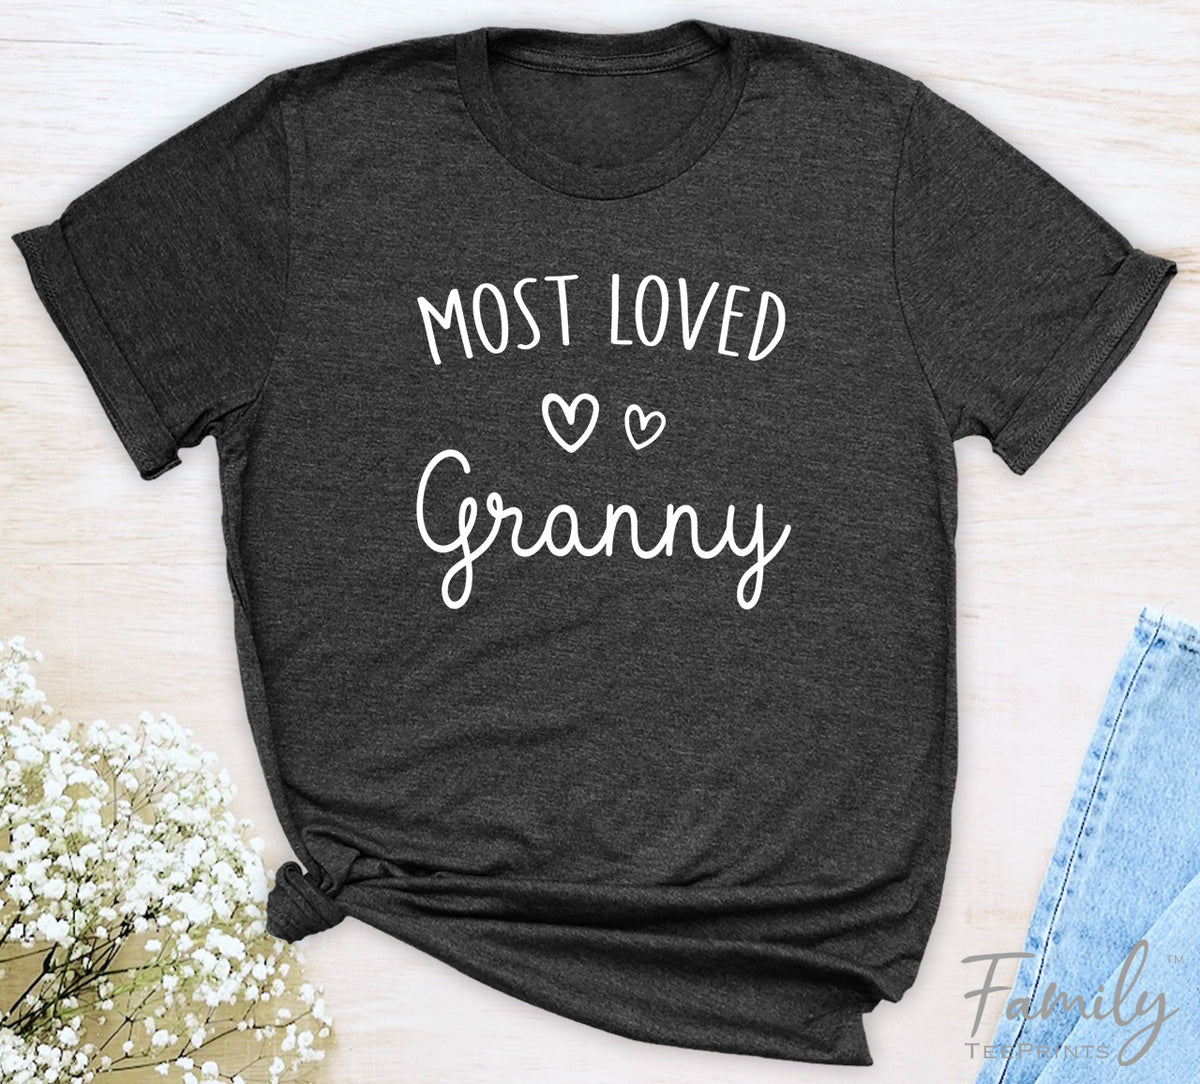 Most Loved Granny - Unisex T-shirt - Granny Shirt - Gift For Granny - familyteeprints